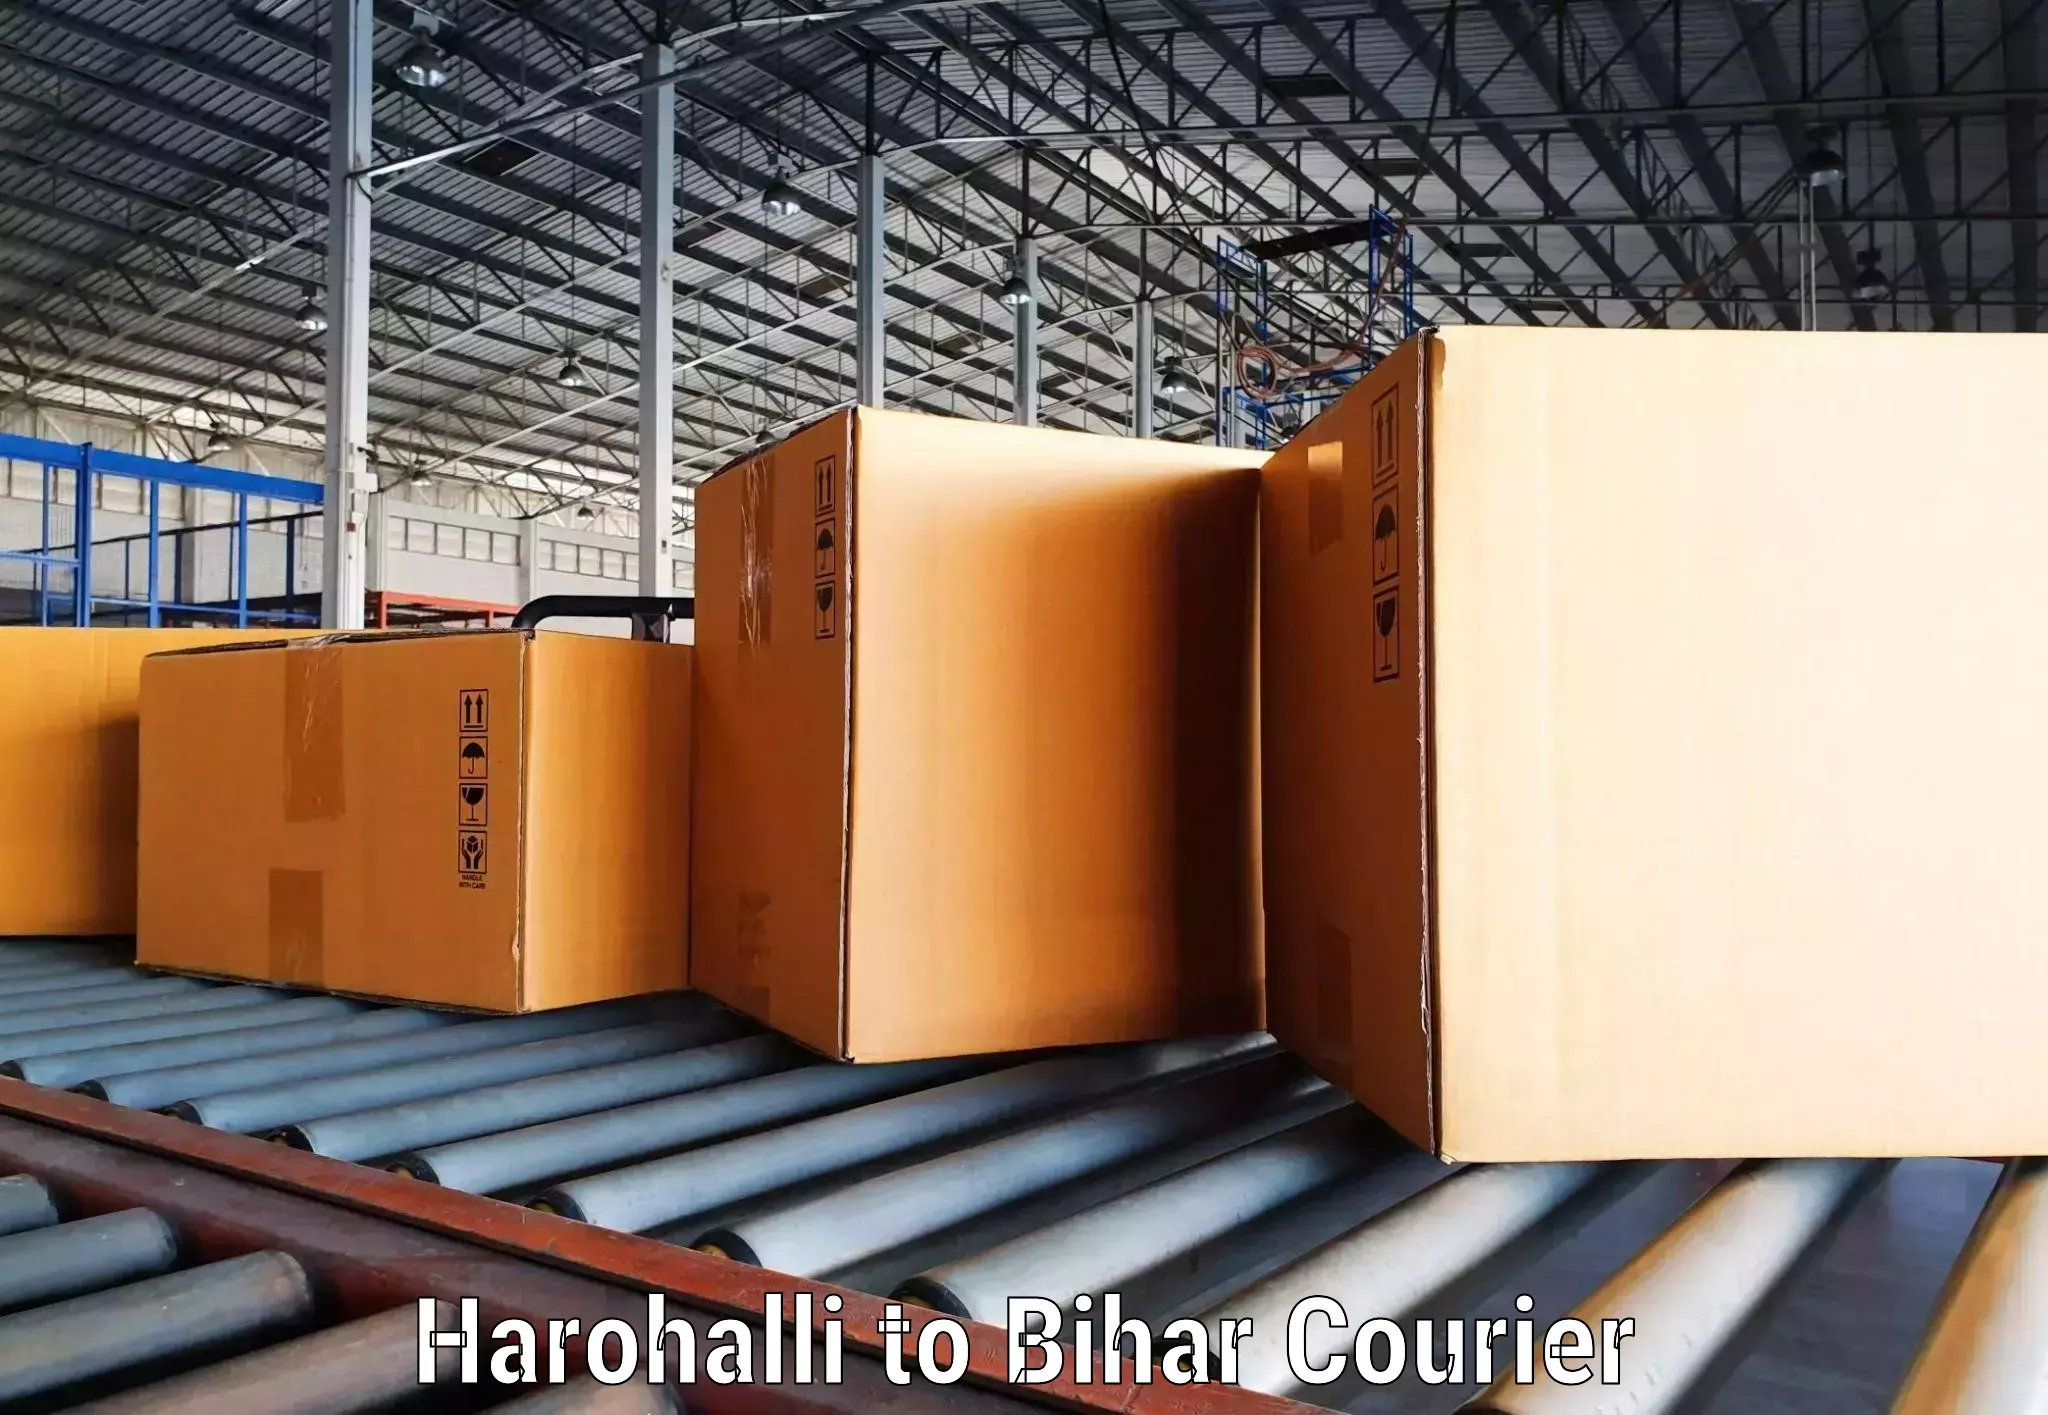 Global shipping networks Harohalli to Korha